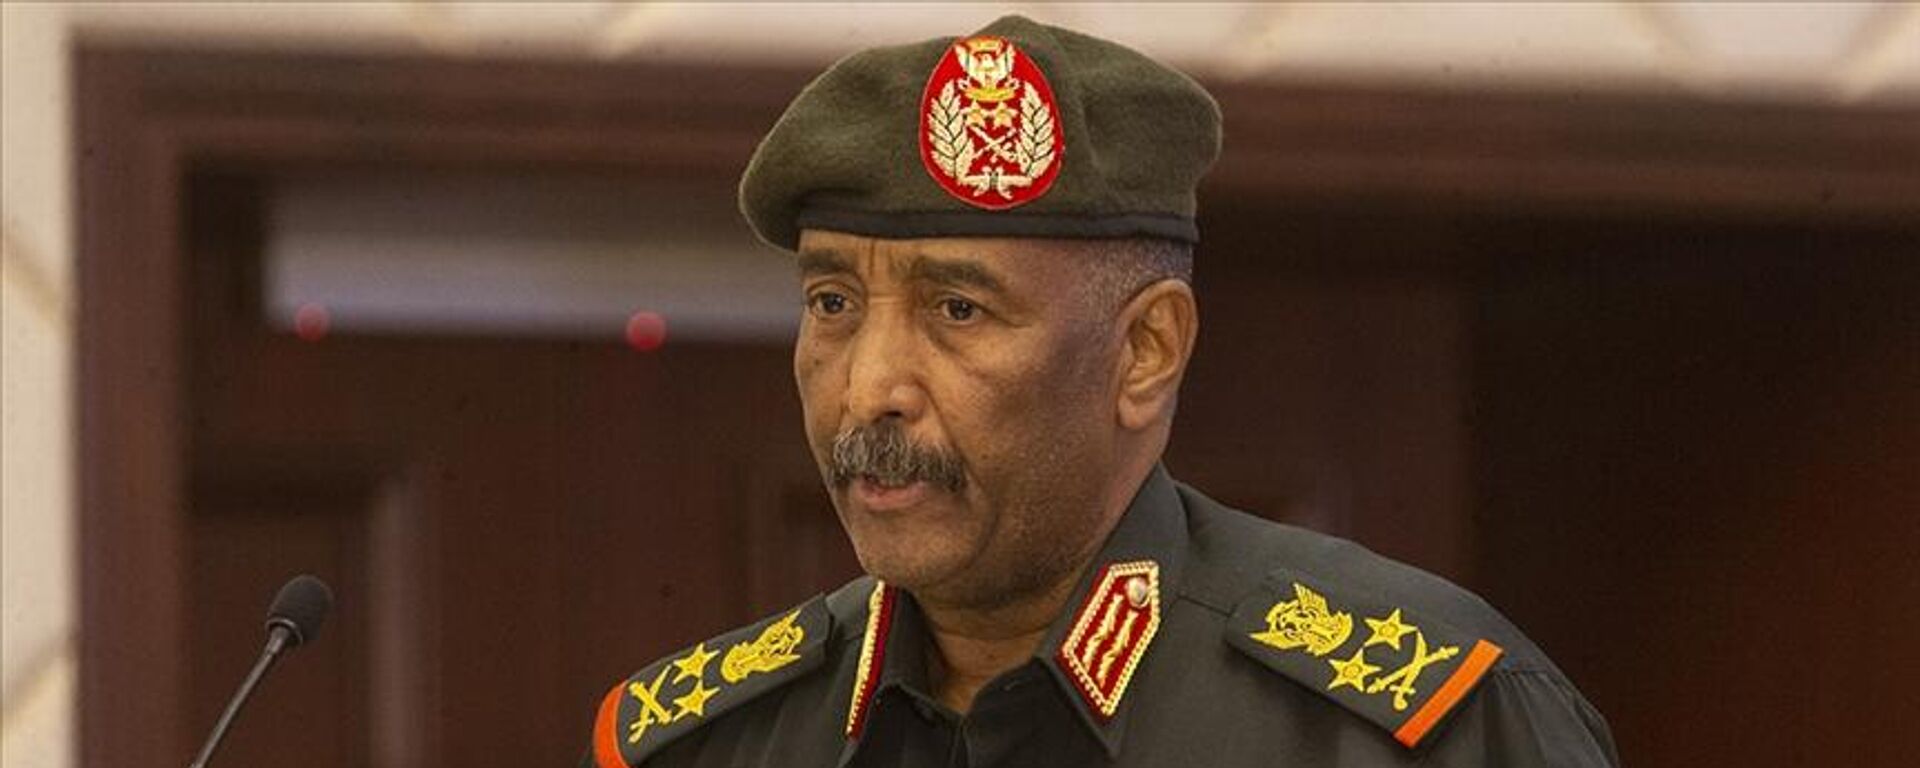 Sudan Egemenlik Konseyi Başkanı ve Ordu Komutanı Orgeneral Abdulfettah El Burhan, askerin siyaset arenasından çekilmeye kararlı olduğunu ve silahlı kuvvetlerin seçimlerle gelen sivil otoriteye tabi olacağına inandıklarını söyledi. - Sputnik Türkiye, 1920, 09.01.2023